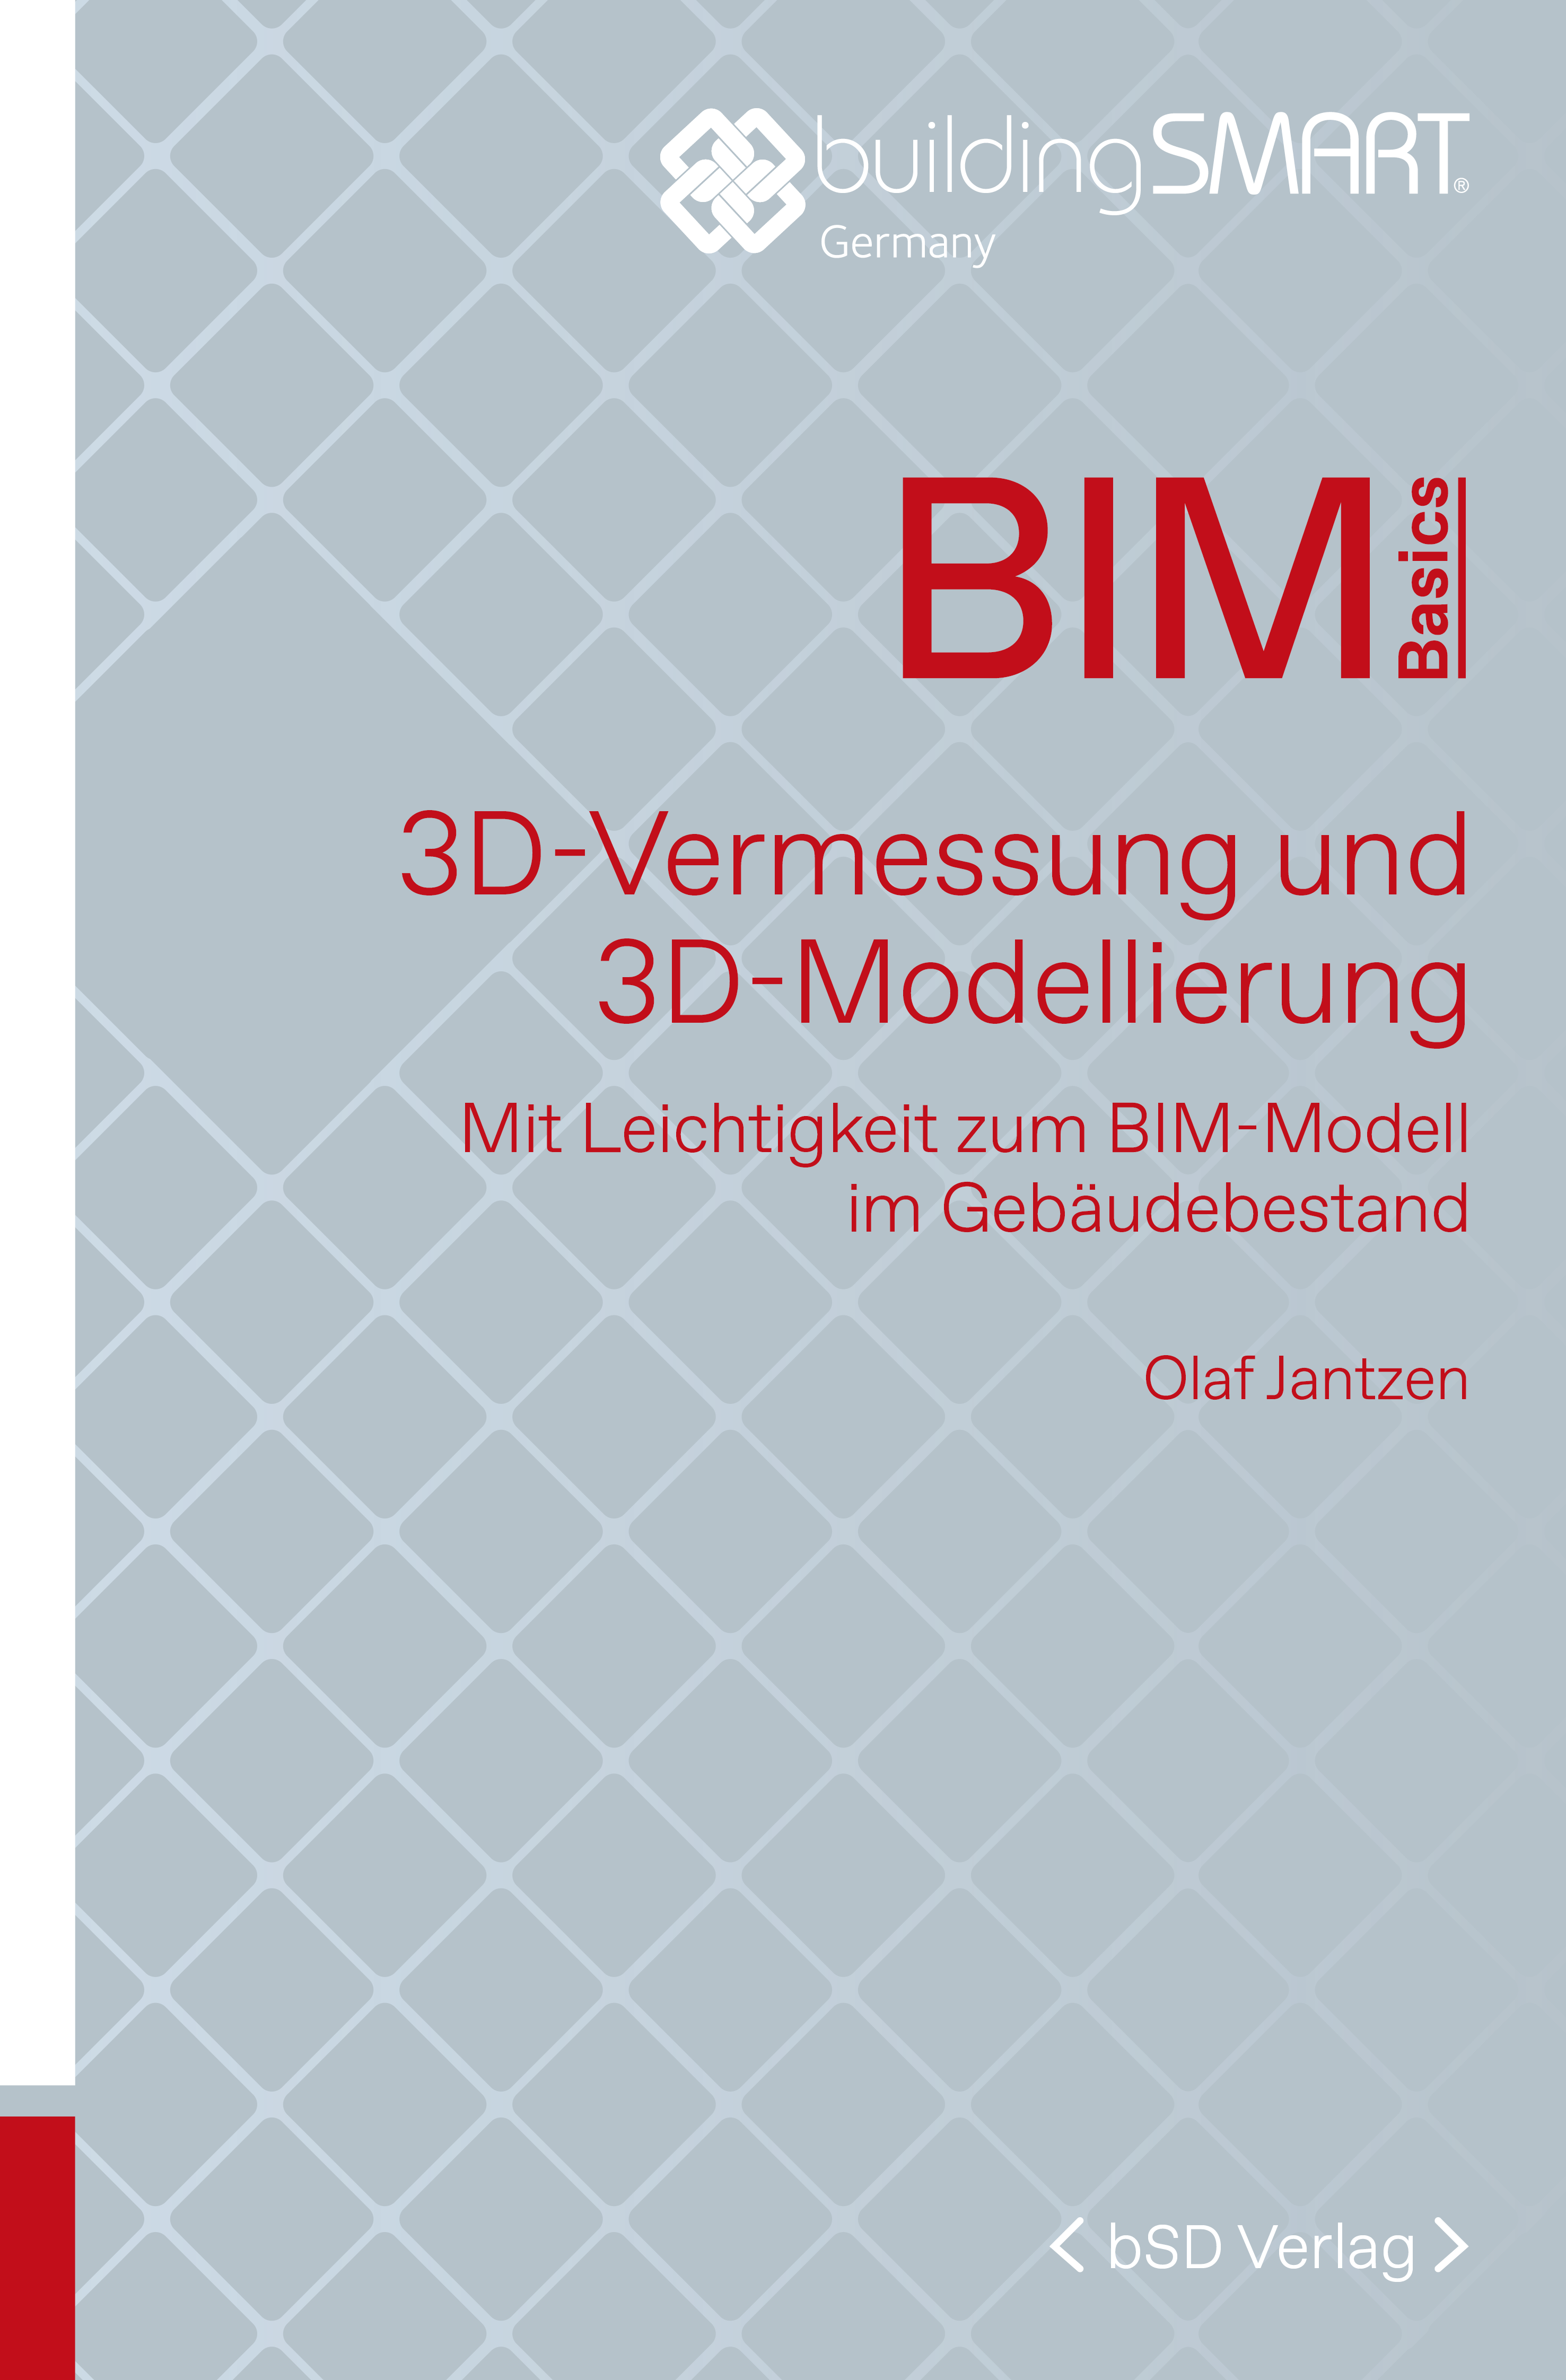 bSD Verlag/BIM Basics: 3D-Vermessung+3D-Modellierung